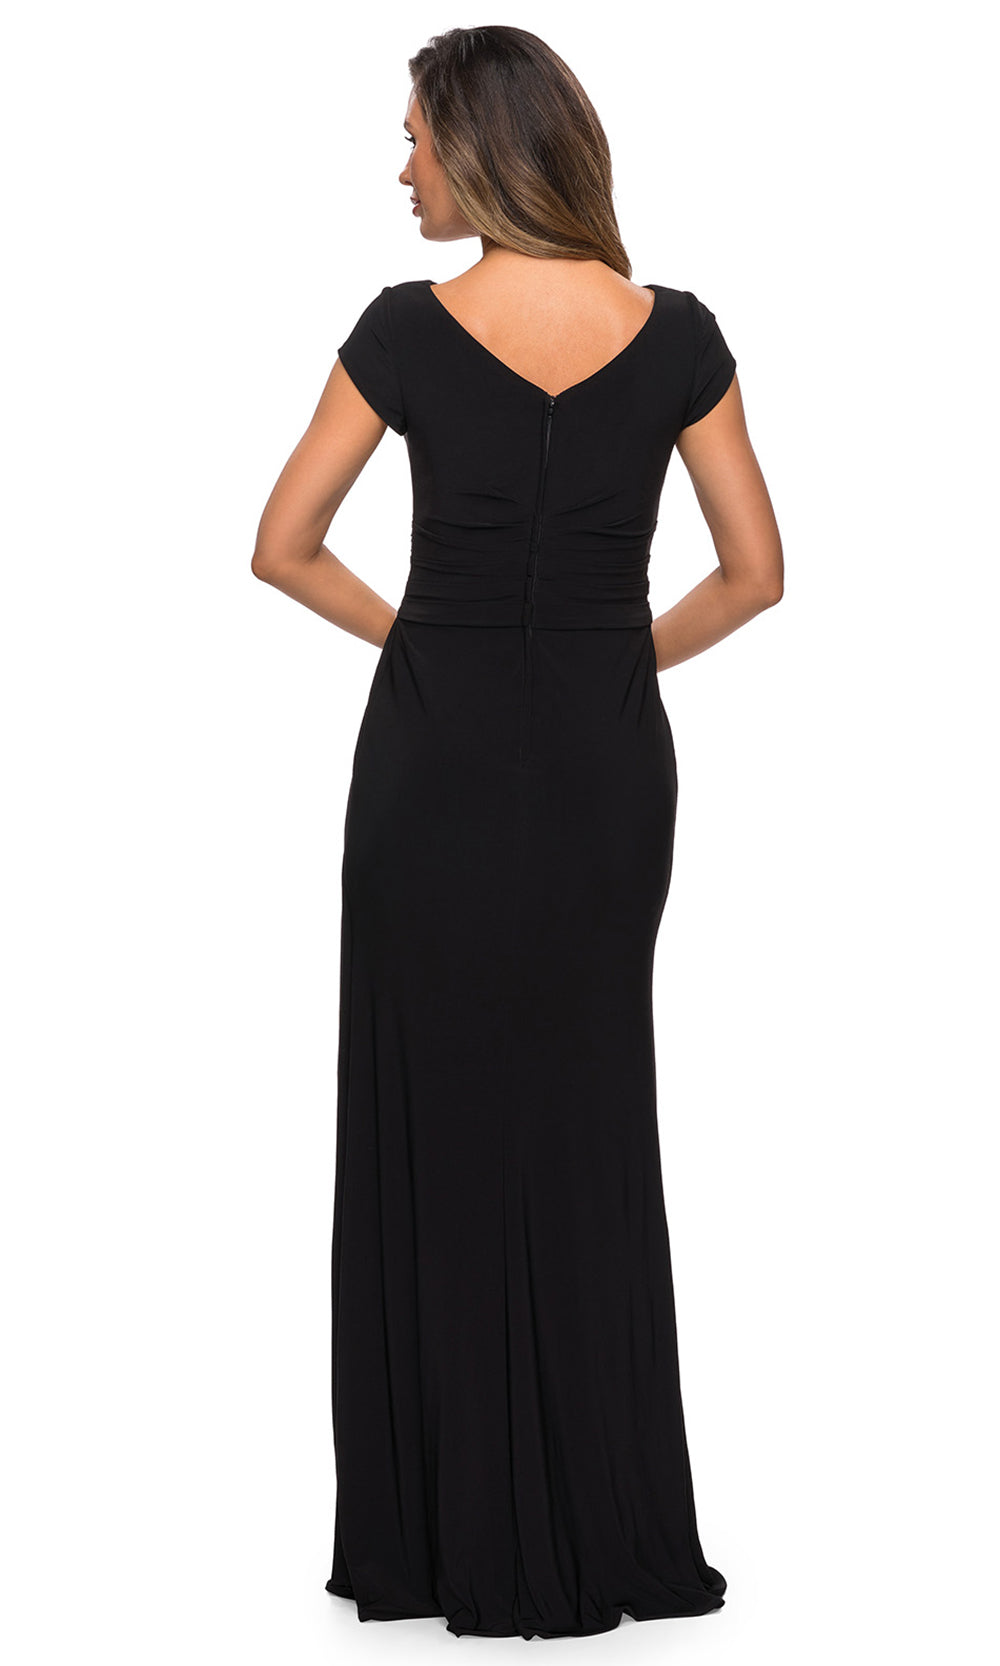 La Femme - 28026 Cap Sleeve Jersey Long Formal Dress In Black